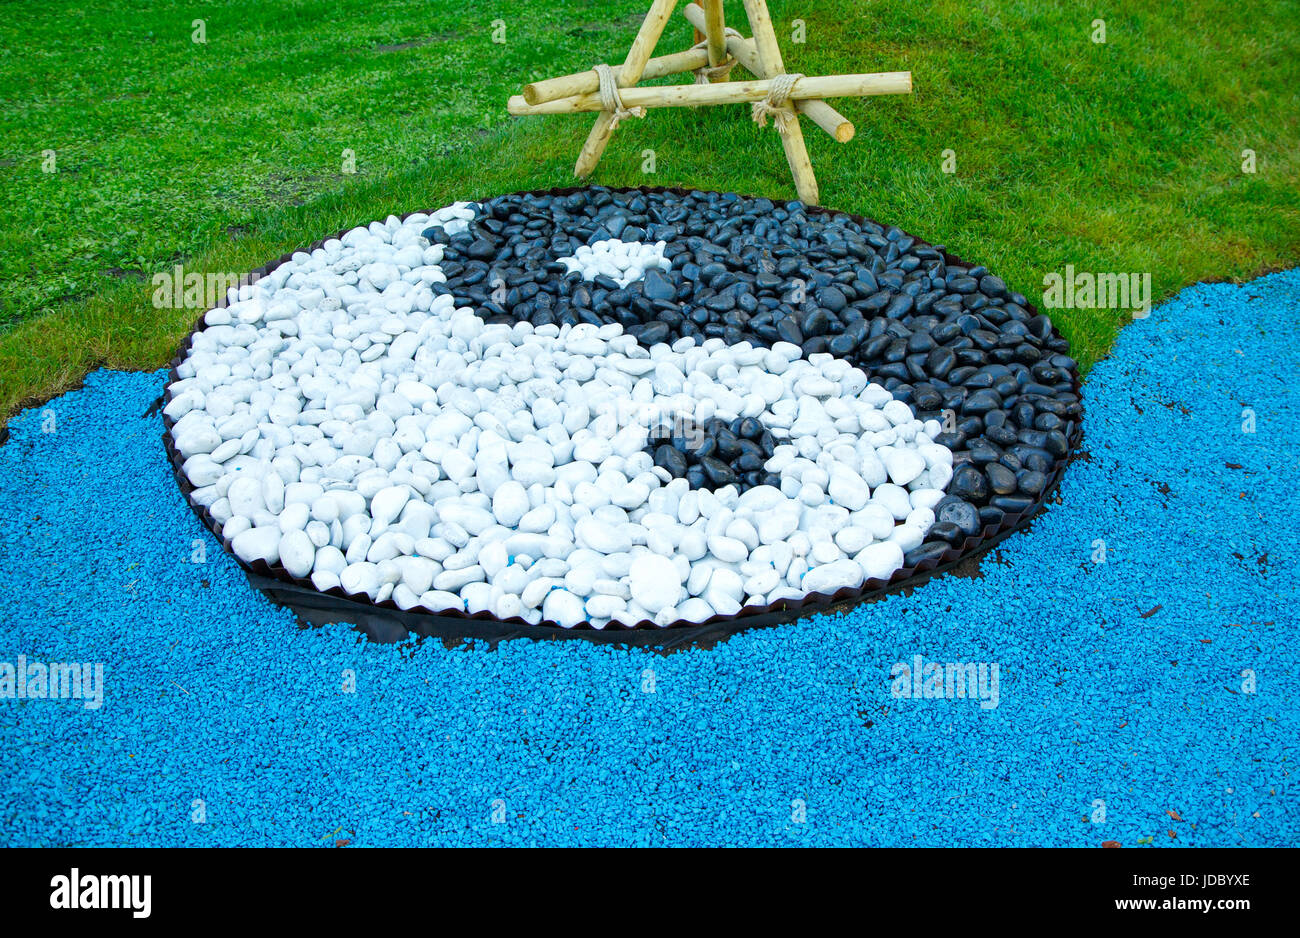 Segno di yin yang di cui al di fuori del nero e pietre bianche su un prato verde Foto Stock